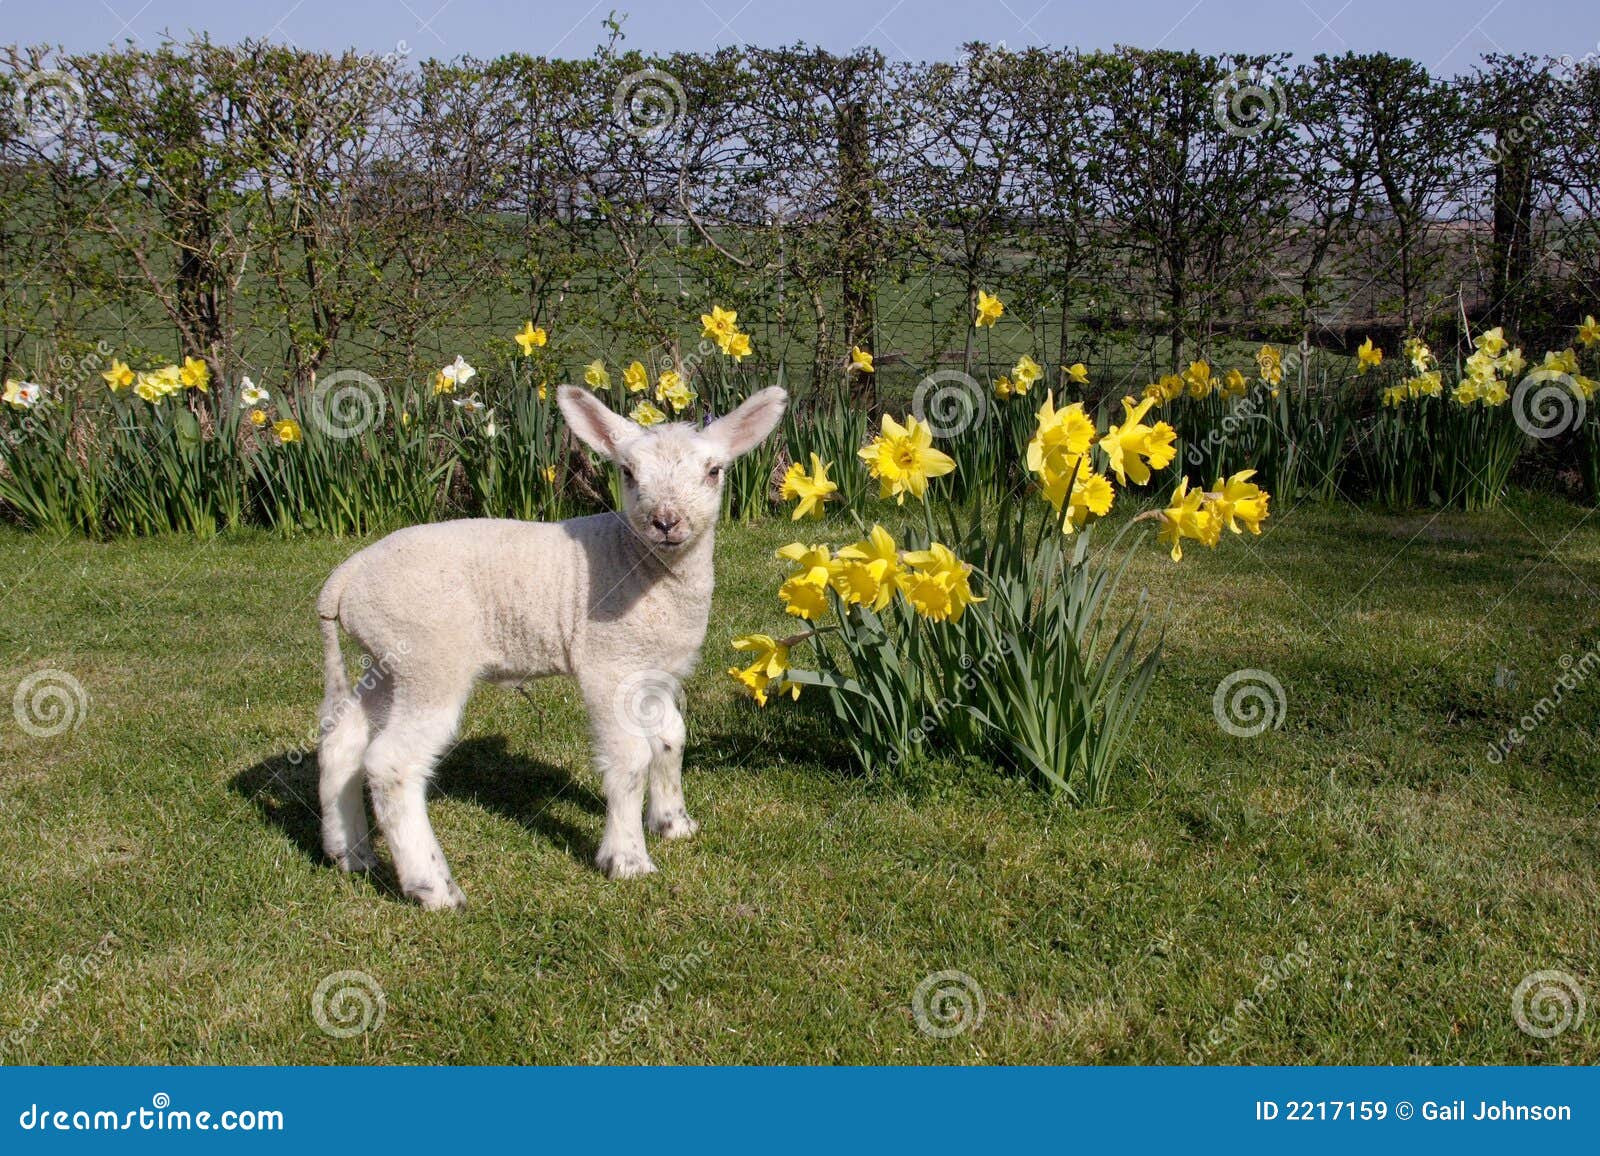 lamb in daffodils